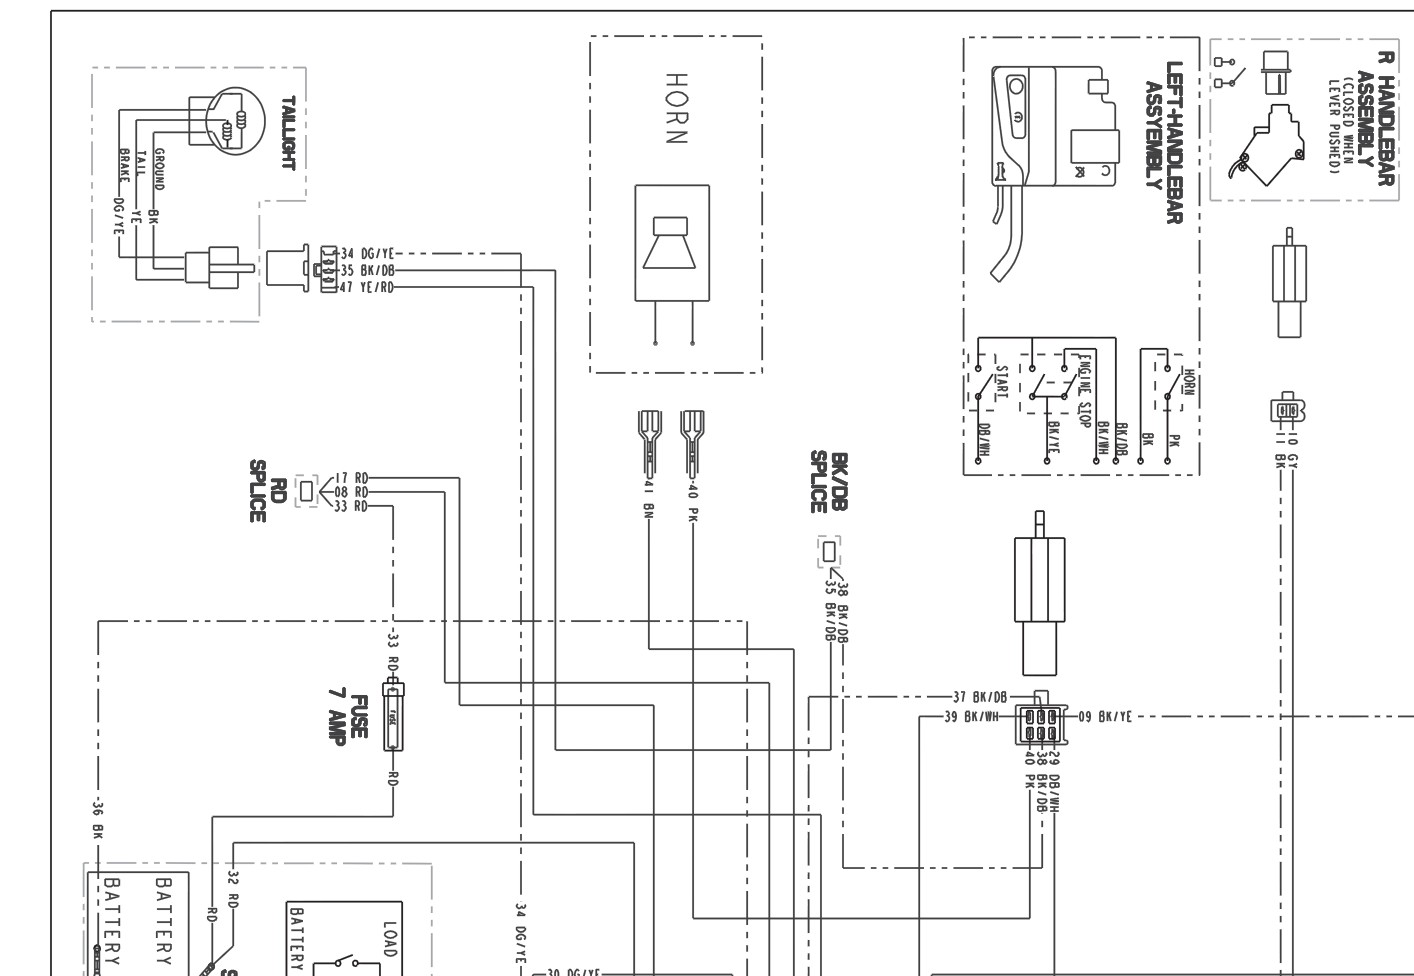 2002 Polaris Sportsman 500 Wiring Diagram Pdf - Wiring Diagram